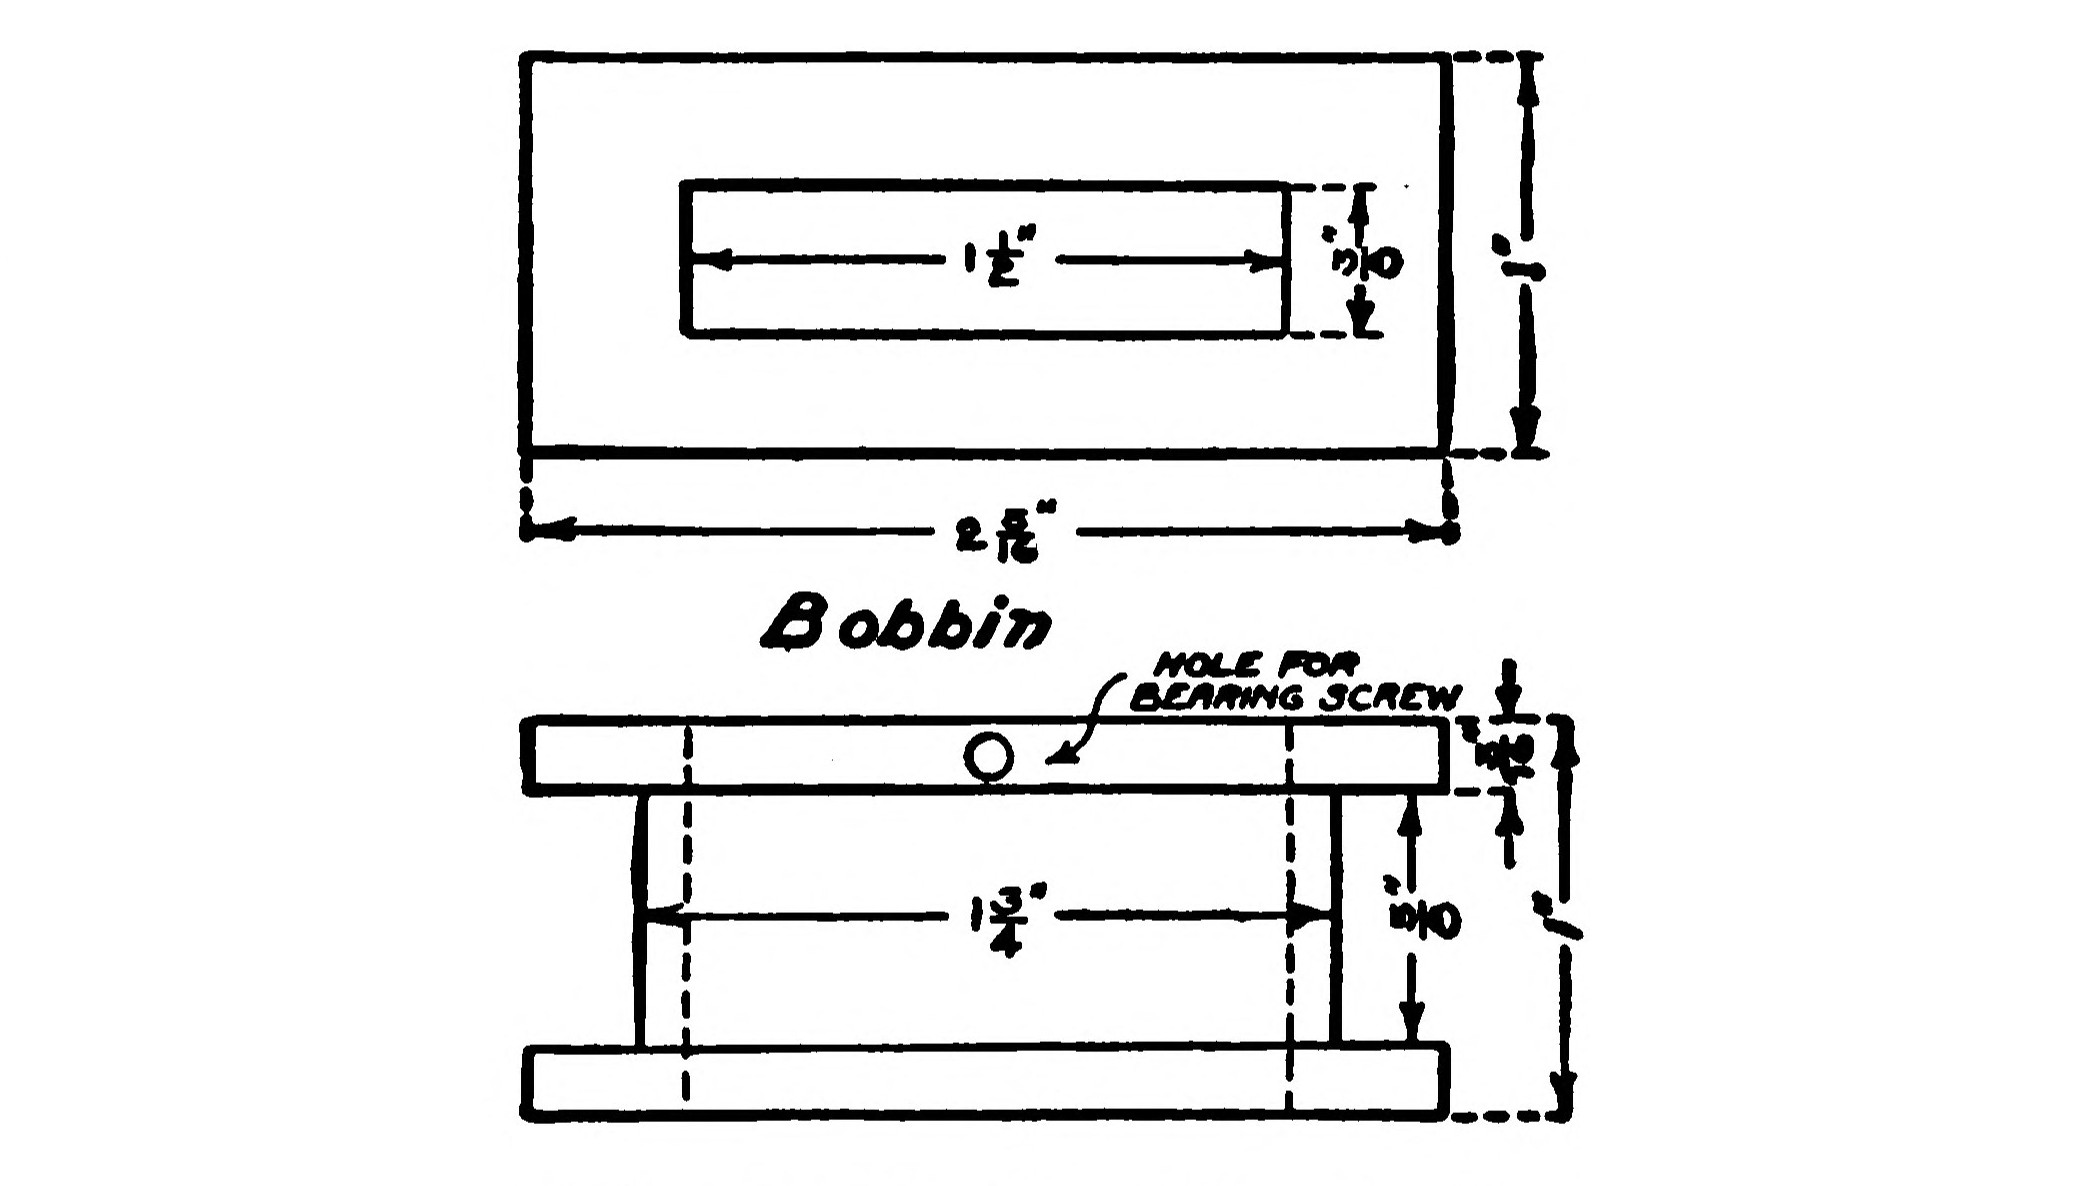 FIG. 68.—Details of the Bobbin.